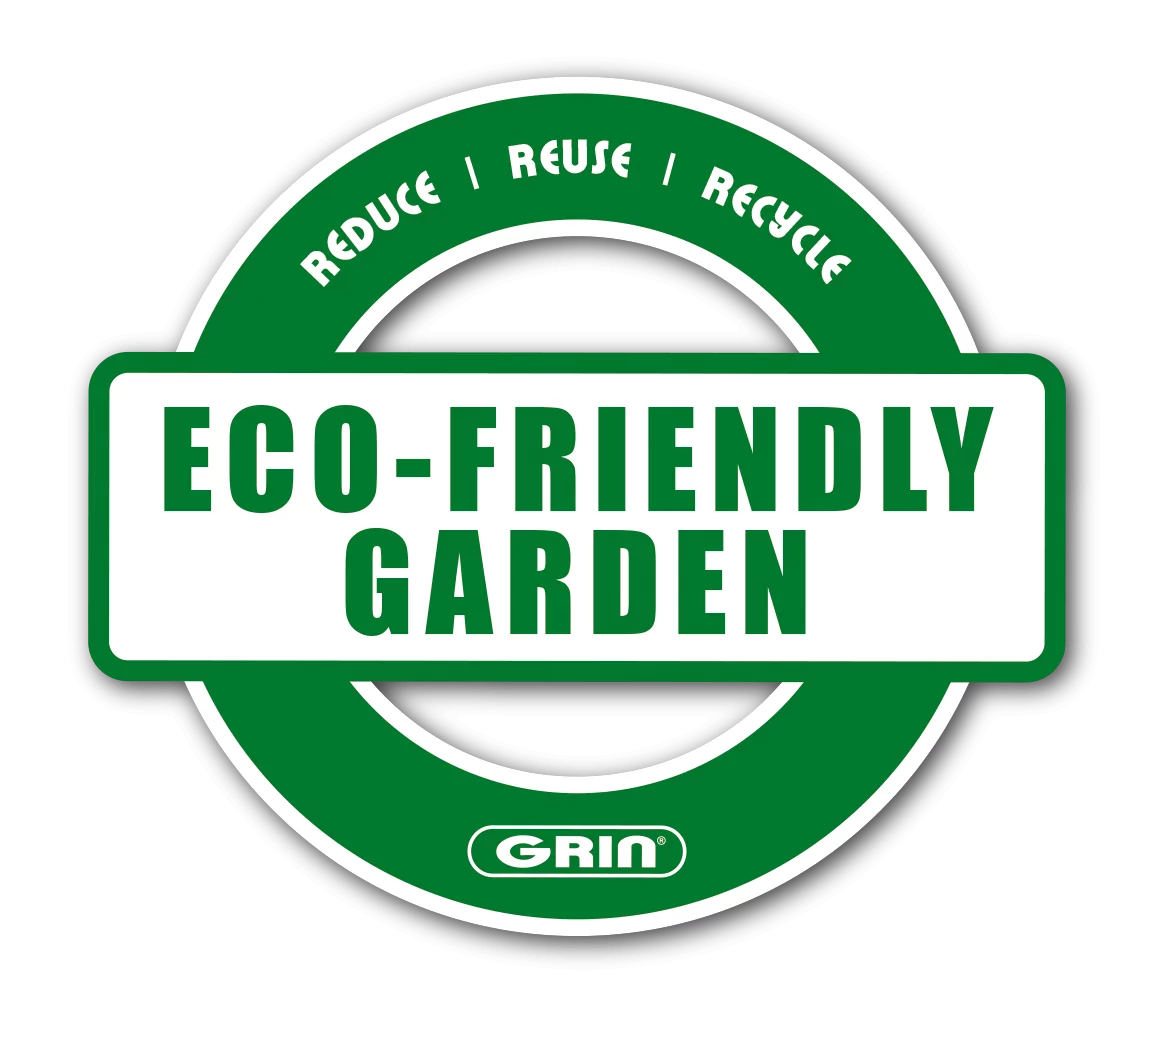 GRIN-Eco Friendly Garden-EN